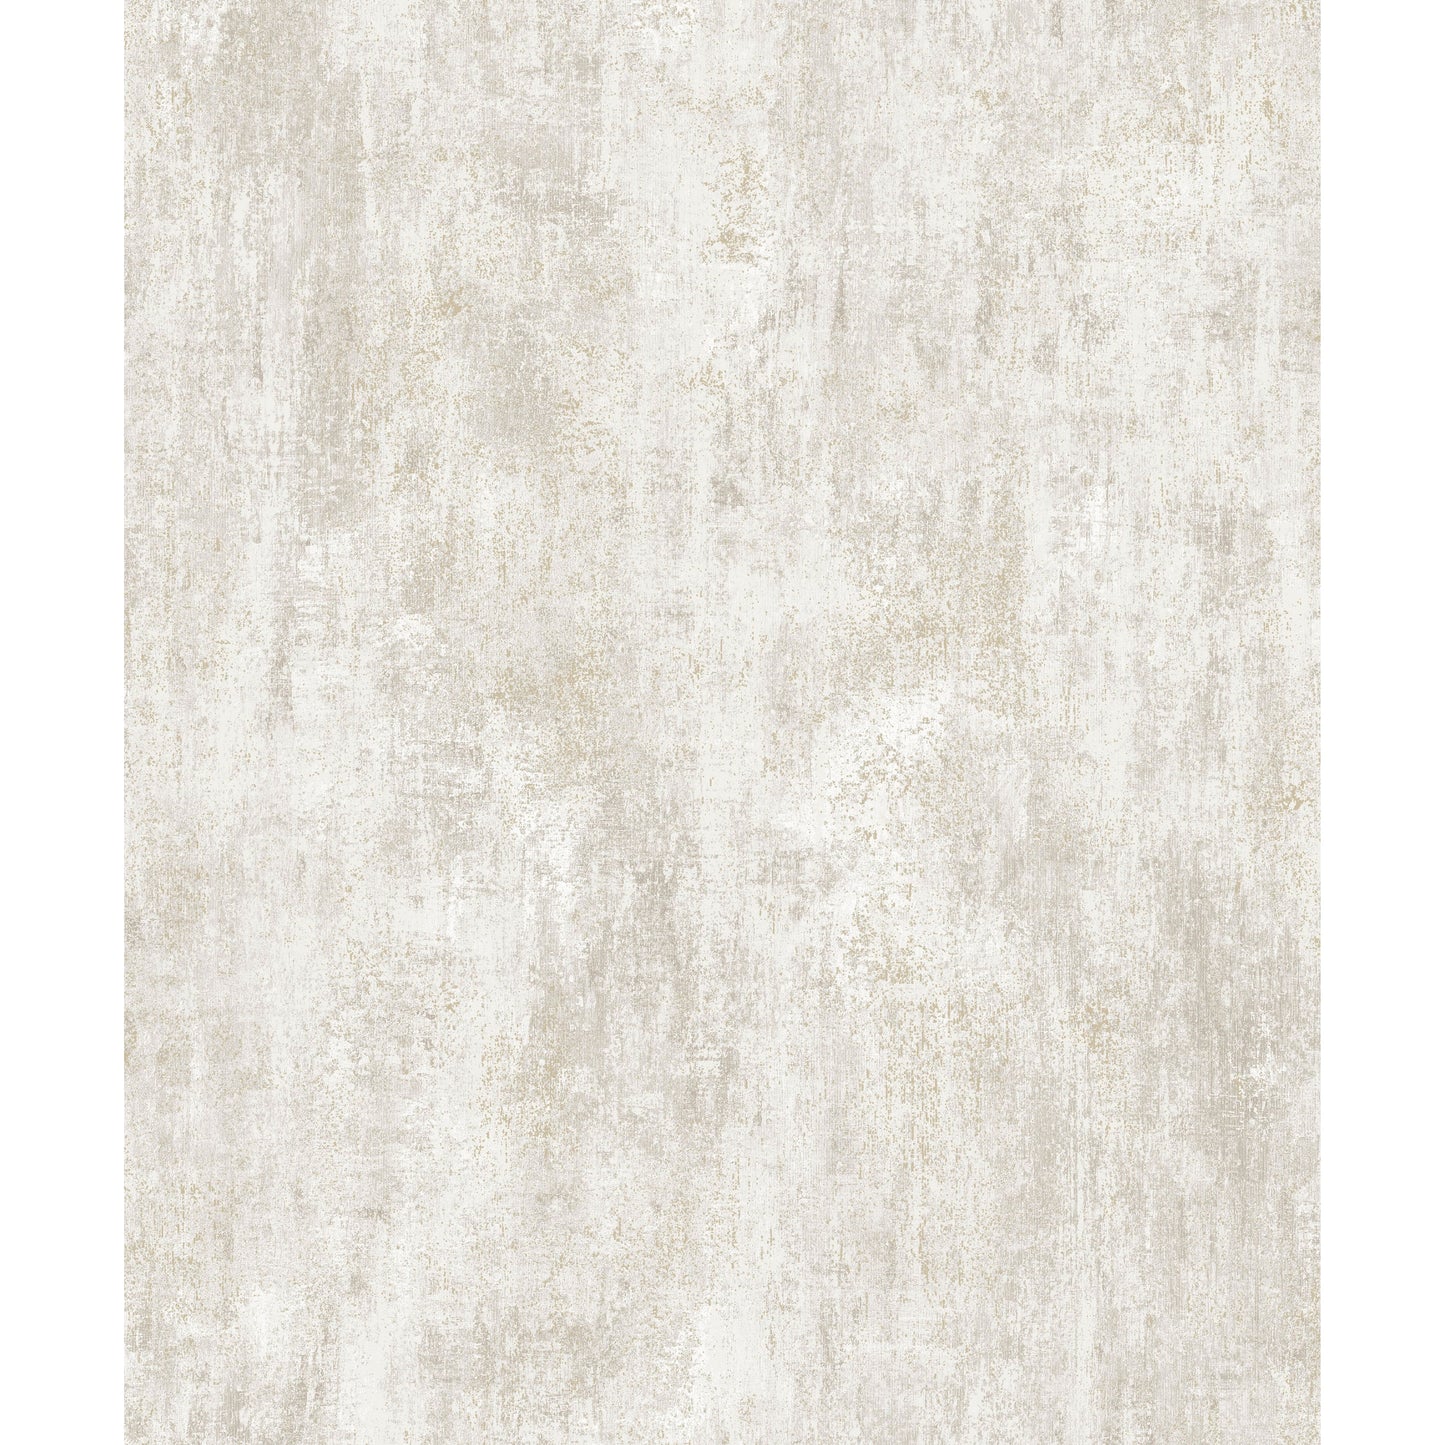 Muriva Phelan Papier peint texturé crème (209102)